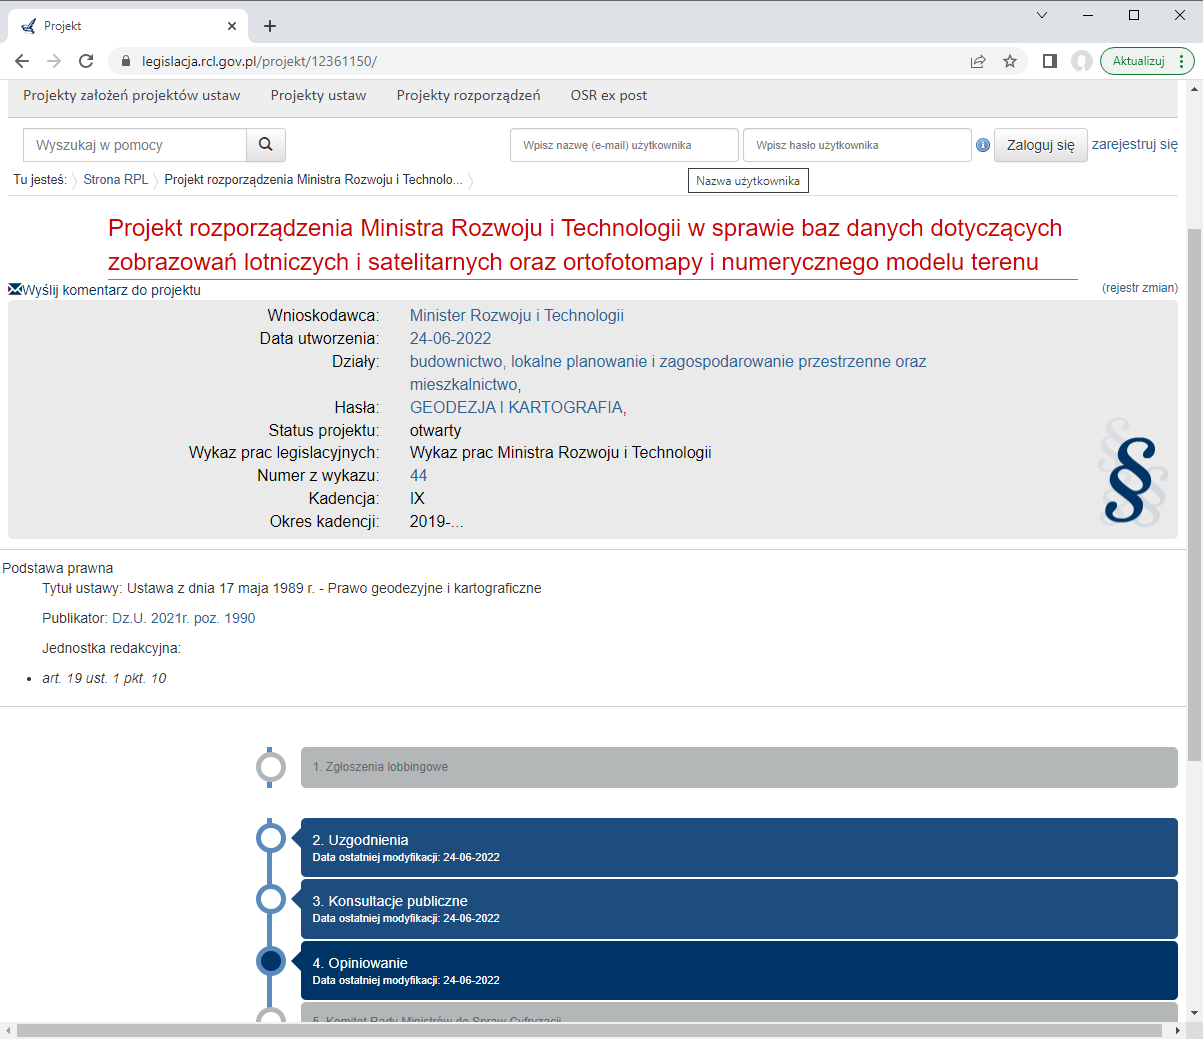 Ilustracja przedstawia zrzut ekranu z serwisu www.legislacja.rcl.gov.pl dotyczący rozporządzenia Ministra Rozwoju i Technologii w sprawie zobrazowań lotniczych i satelitarnych , ortofotomapy i numerycznego modelu terenu.